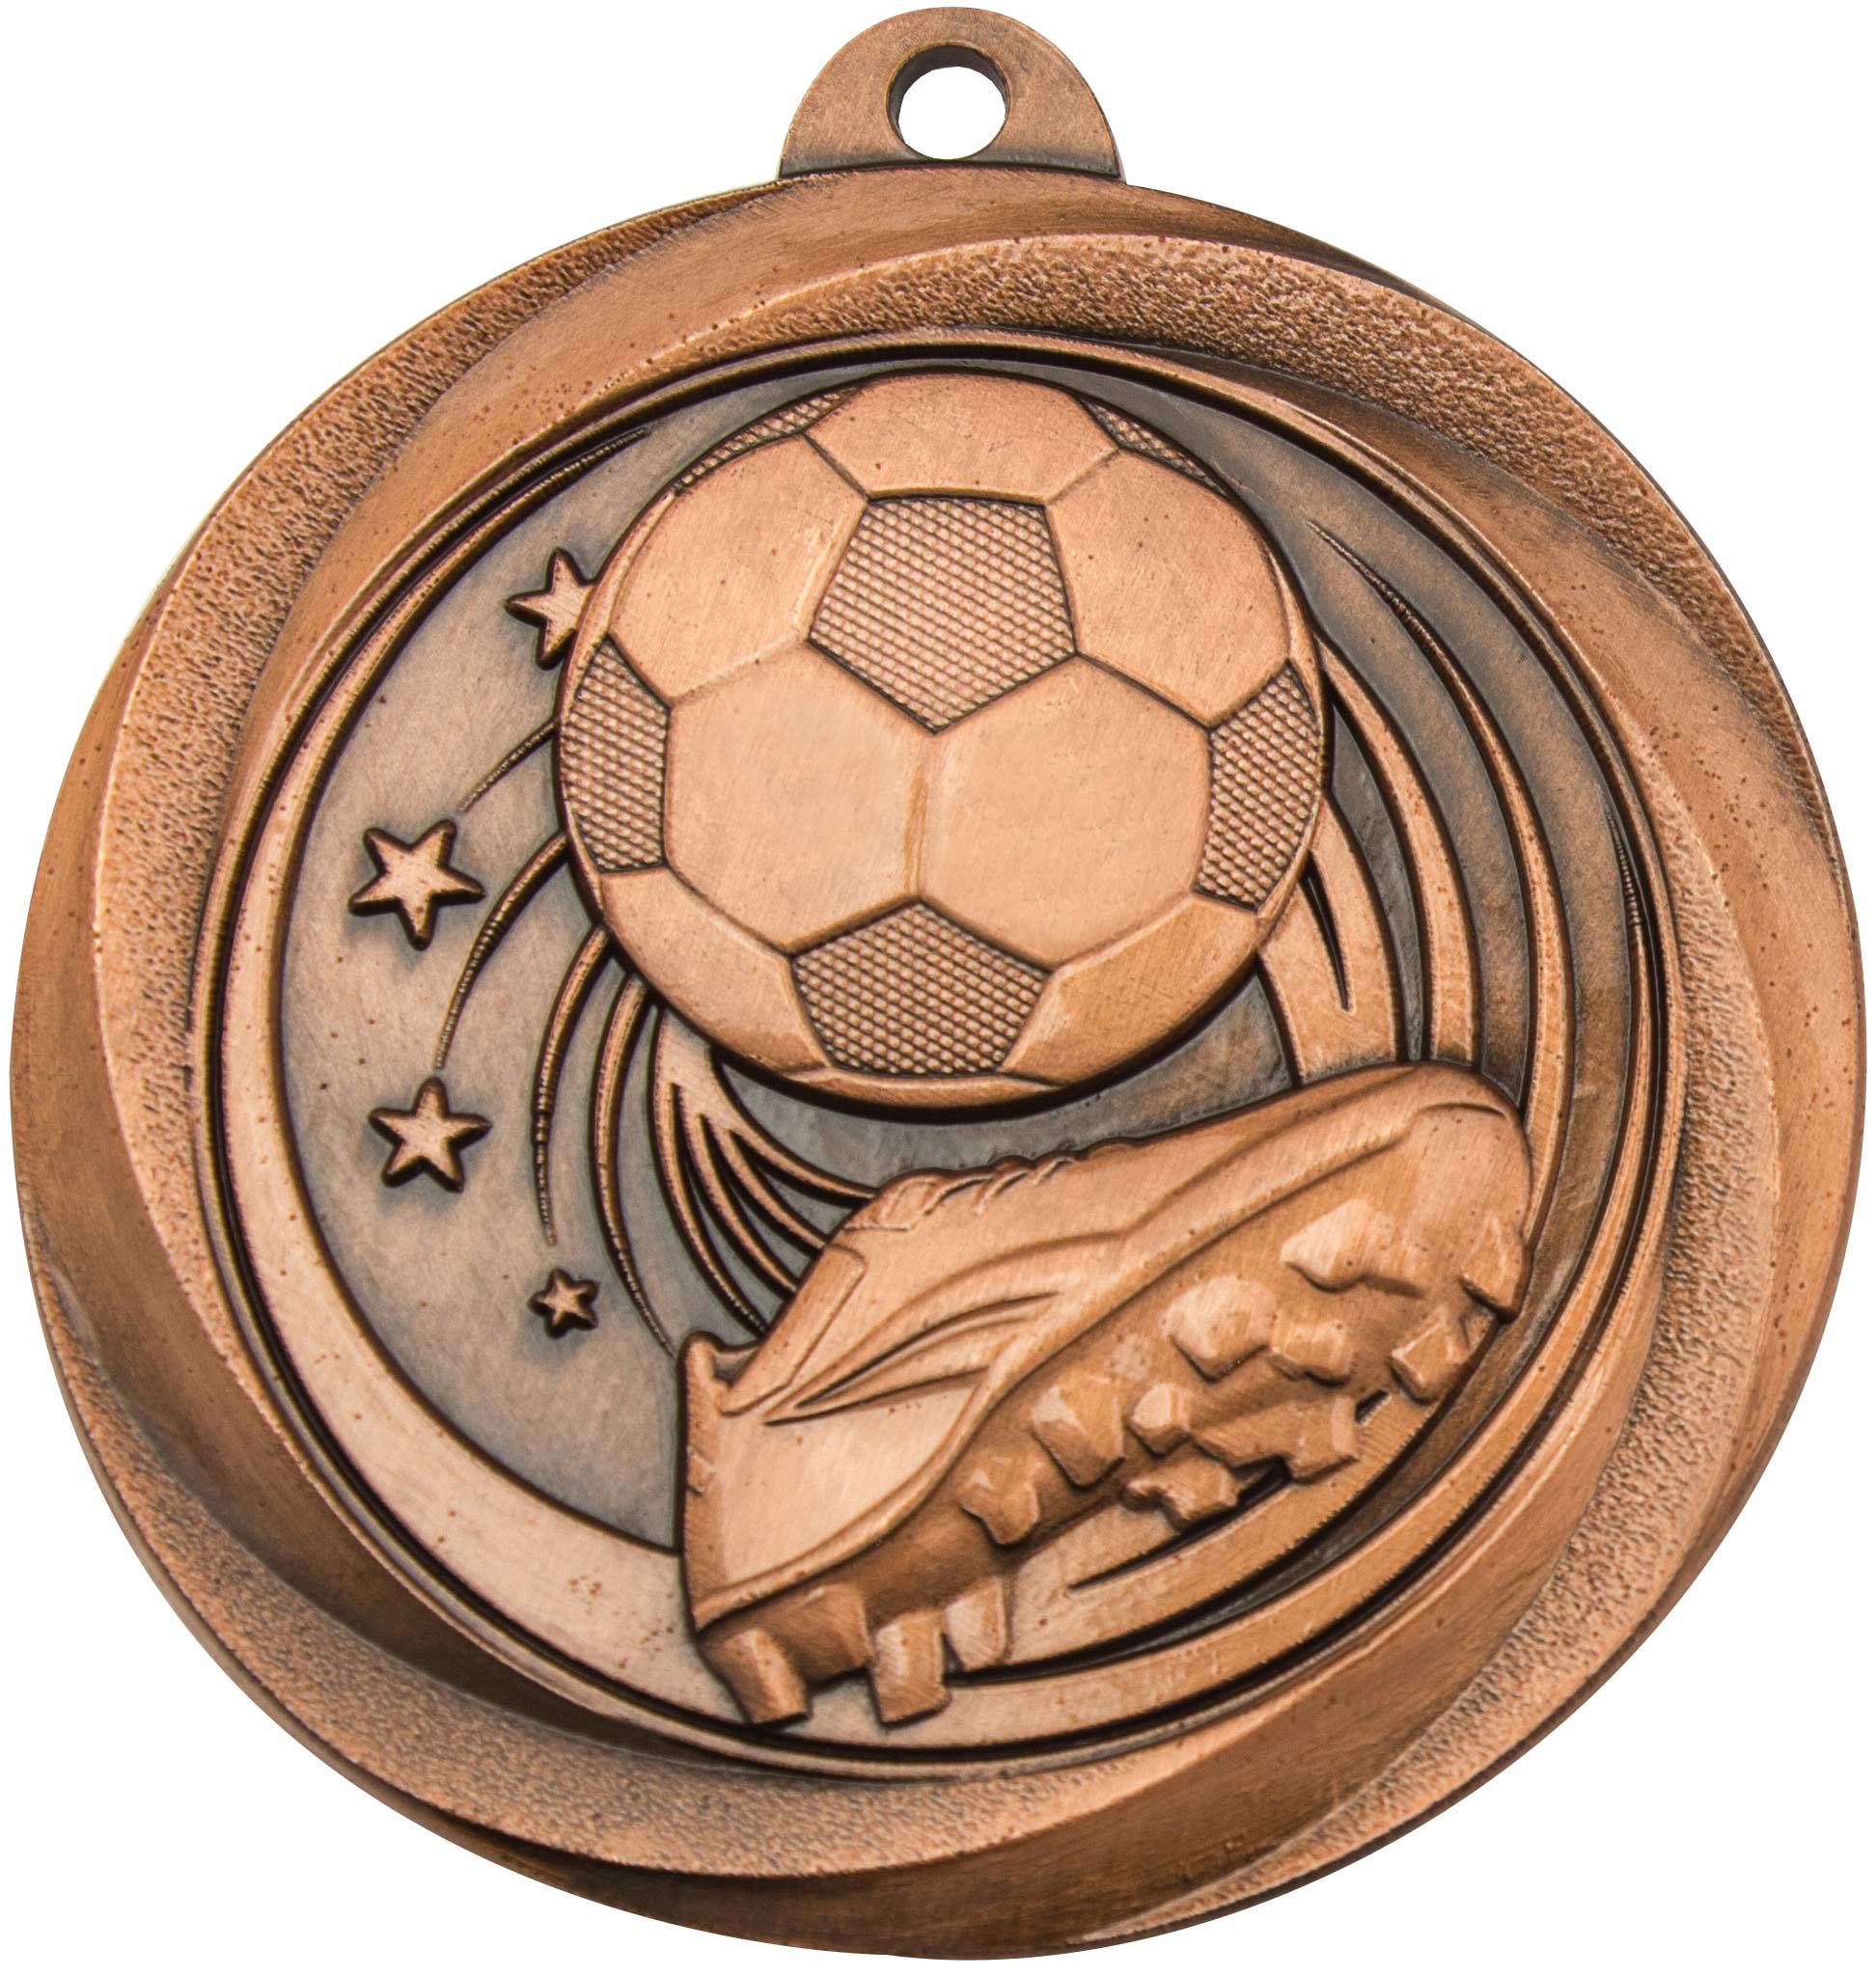 ME904 Soccer Medal